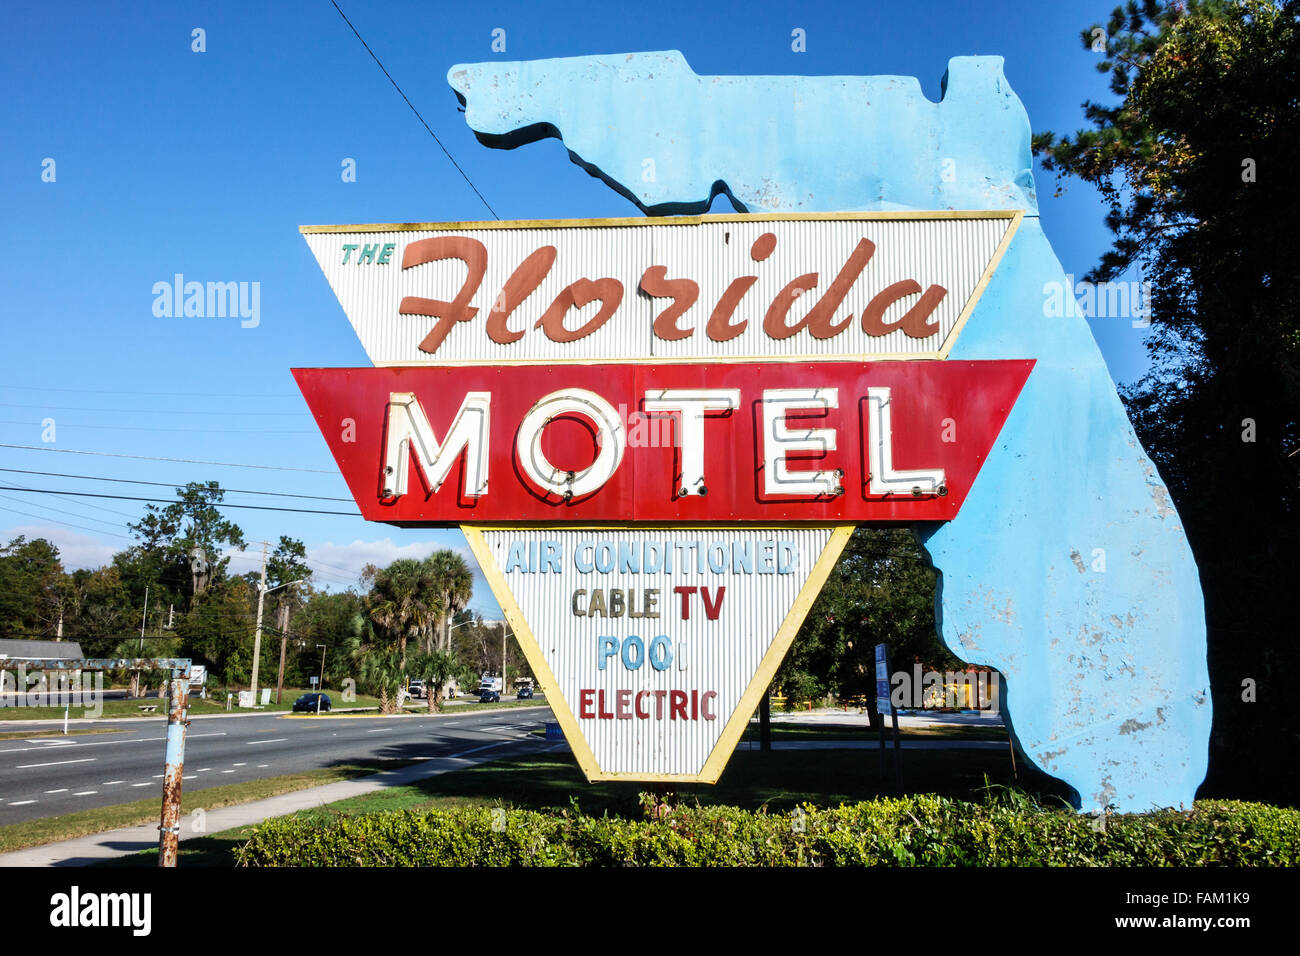 Gainesville Floride, le Florida Motel, budget, grand panneau, les visiteurs Voyage voyage touristique touristique repère culturel, vacances gr Banque D'Images